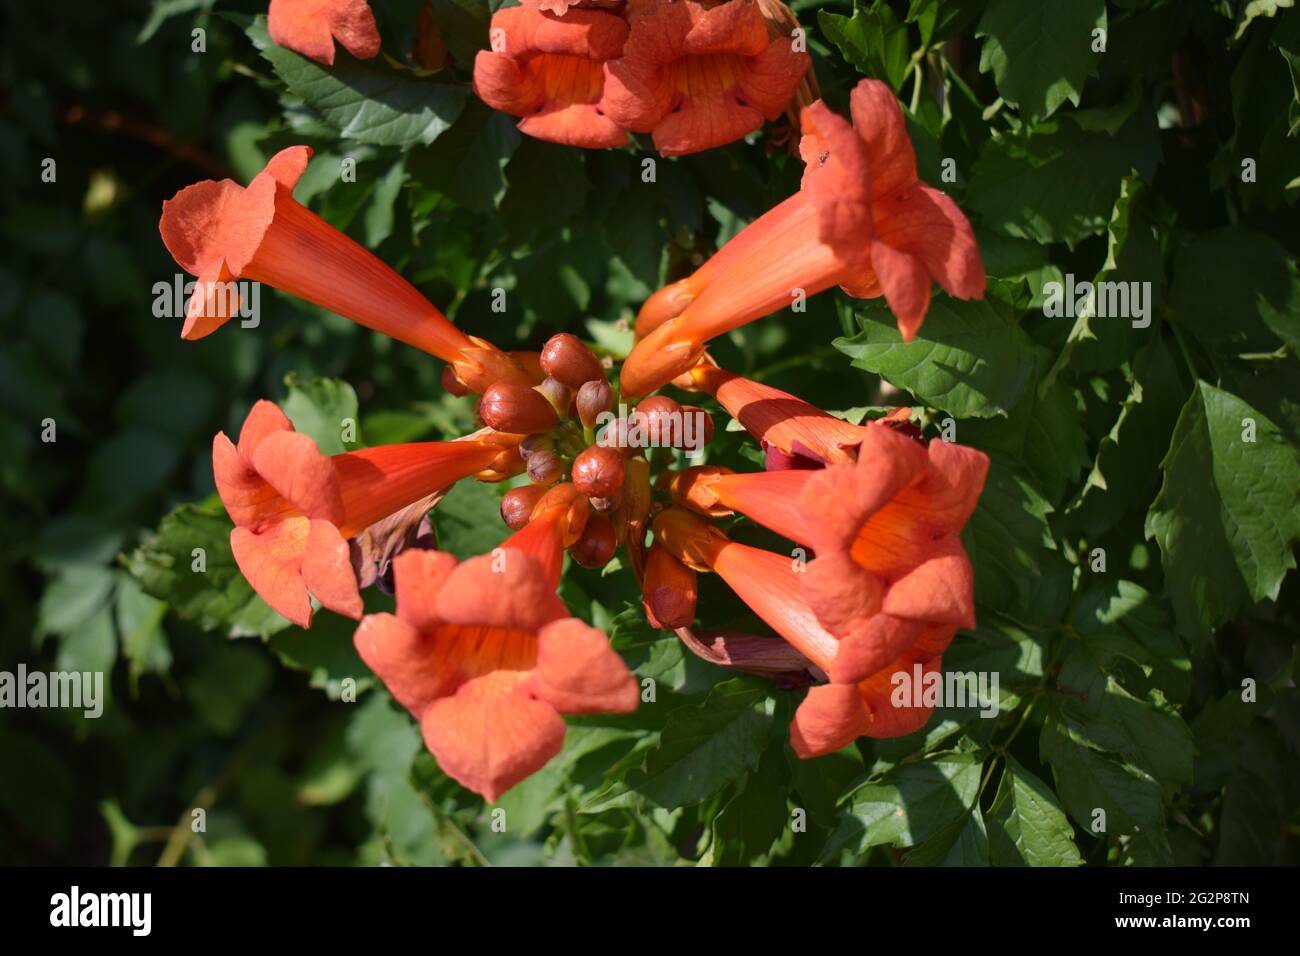 Belles fleurs rouges de la trompette ou de la trompette rampante (Campsis radicans). Branche de trompette de vigne avec beaucoup de fleurs rouges. Ampsis Flamenco Bright Banque D'Images